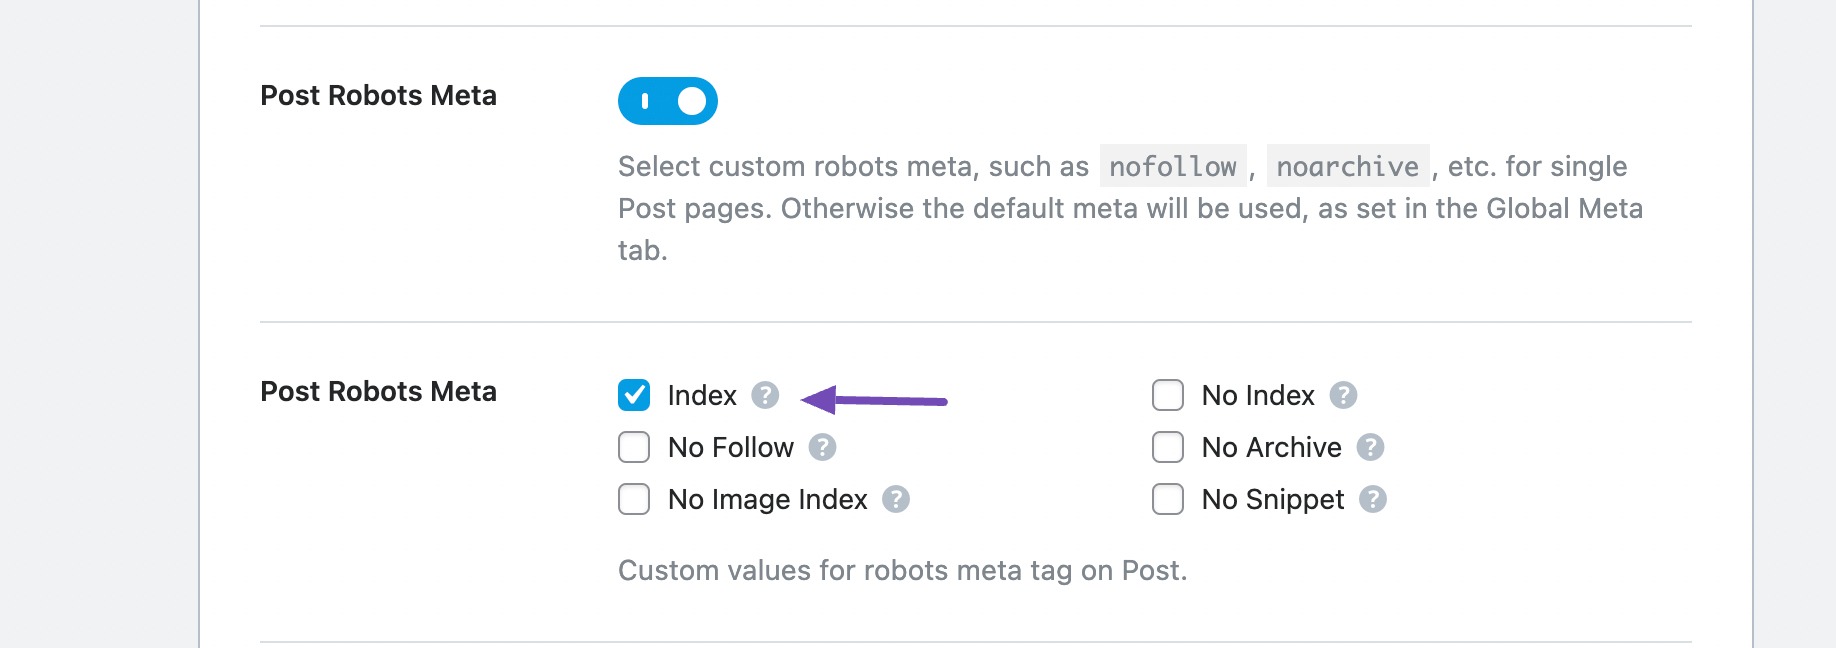 ตรวจสอบ Post Robots Meta